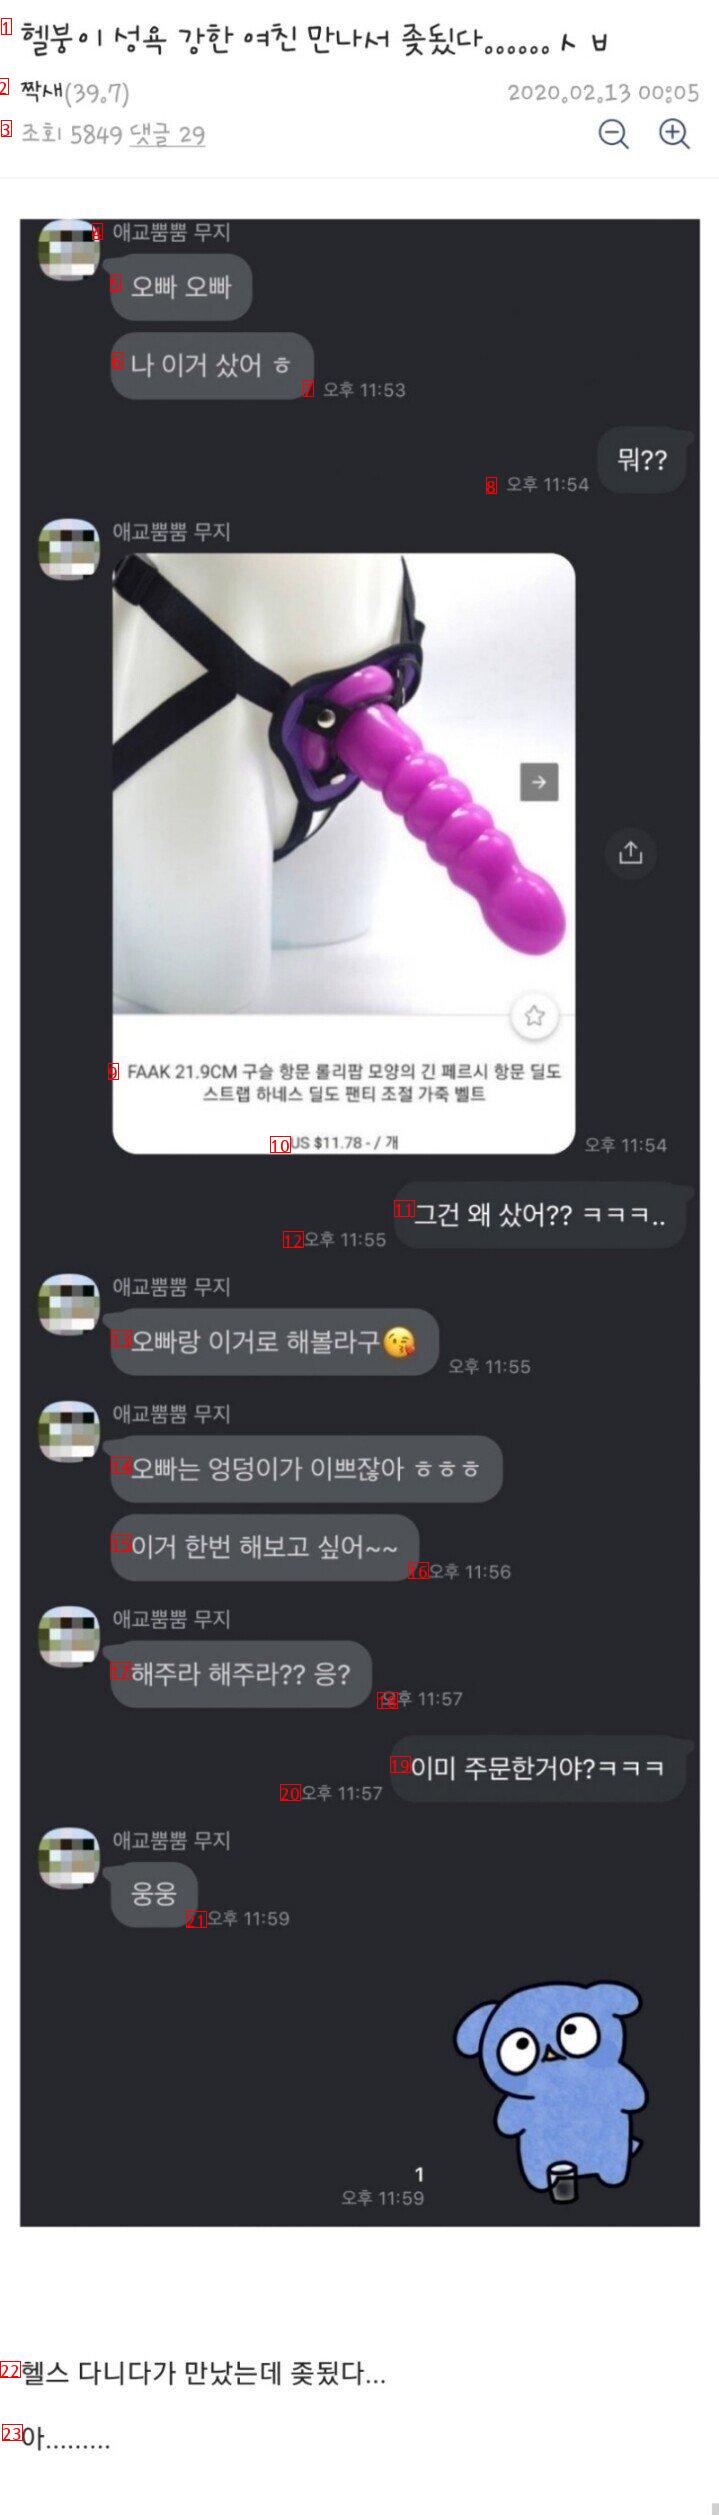 성욕 강한 여친을 만난 헬갤러